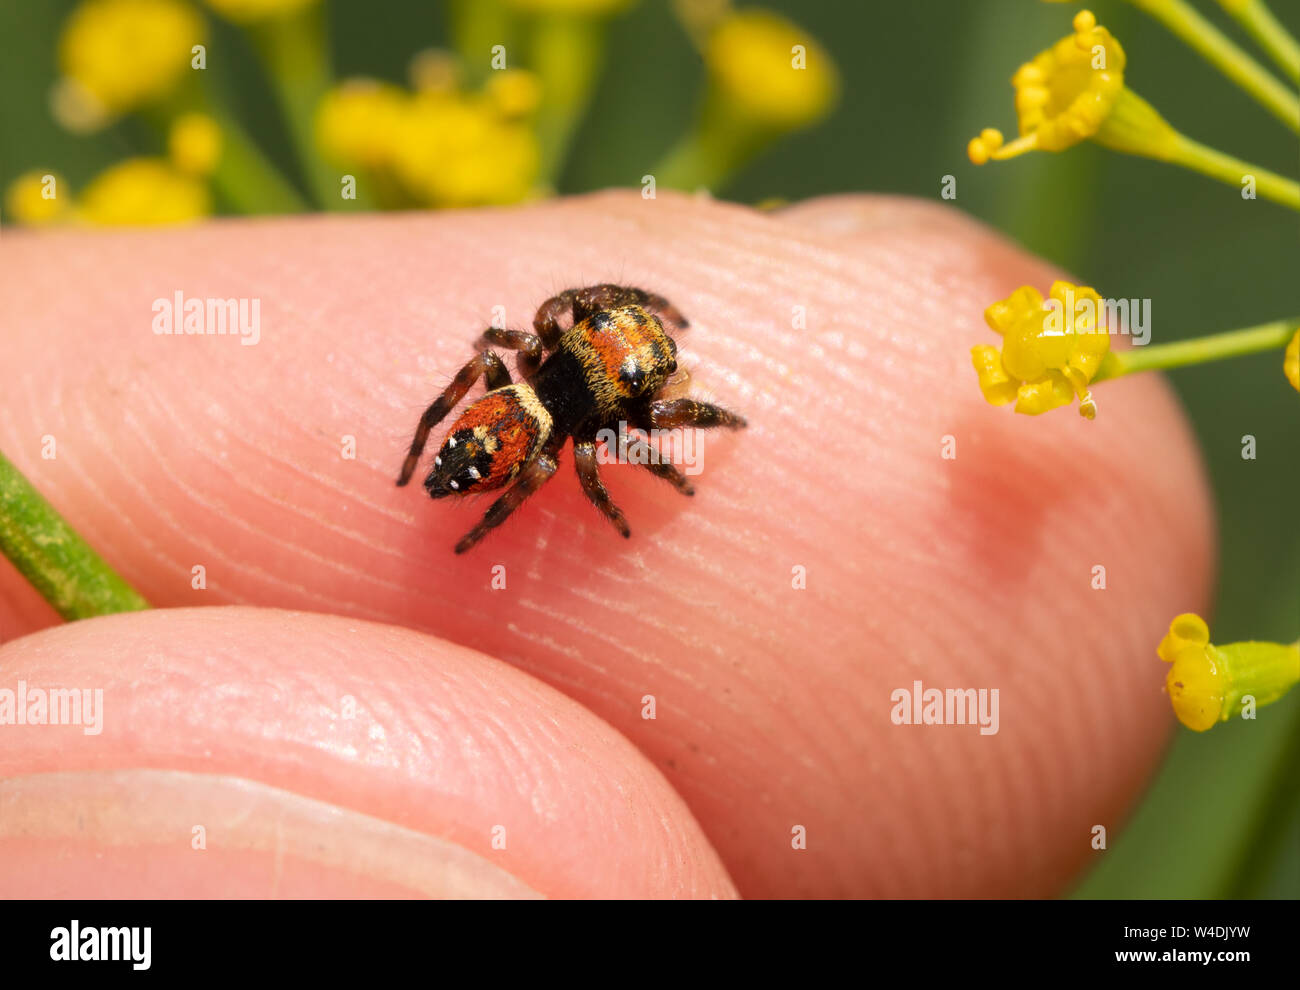 Vue de dessus d'une minuscule araignée sauteuse brillant sur un bout de doigt, jumpings araignées sont curieux et amicaux Banque D'Images